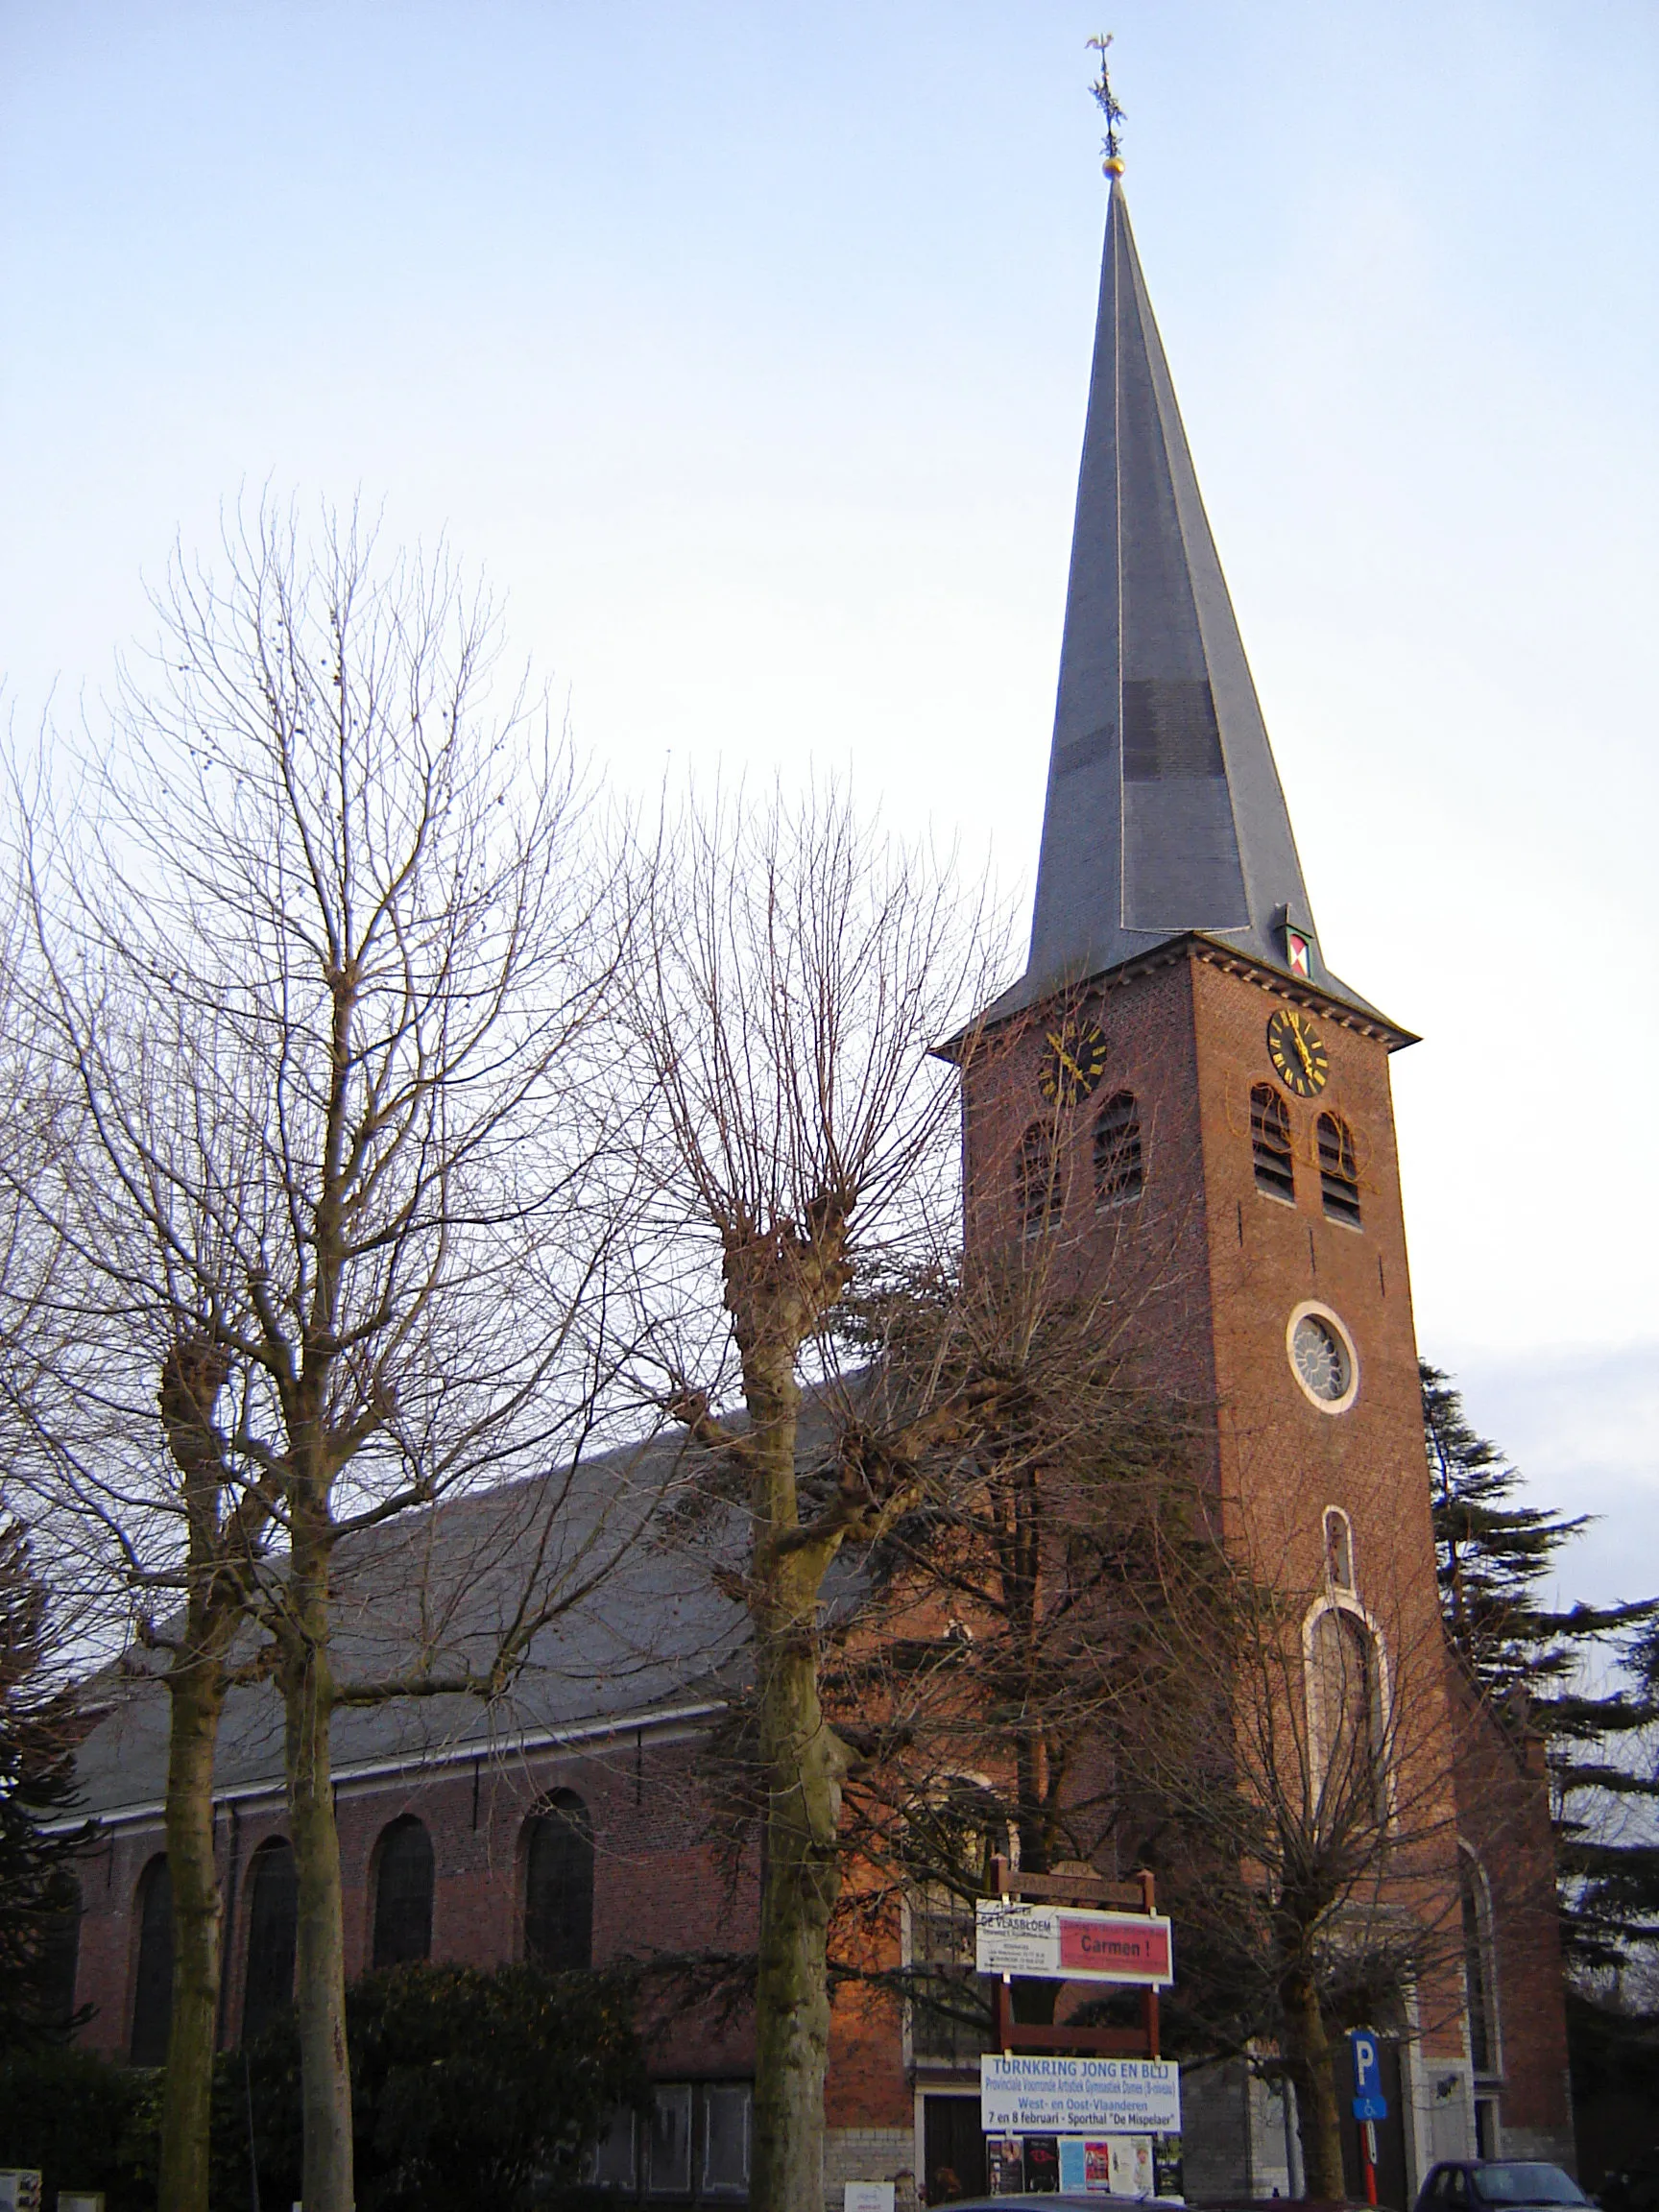 Photo showing: Church of Our Lady ten Bos in Nieuwkerken-Waas. Nieuwkerken-Waas, Sint-Niklaas, East Flanders, Belgium